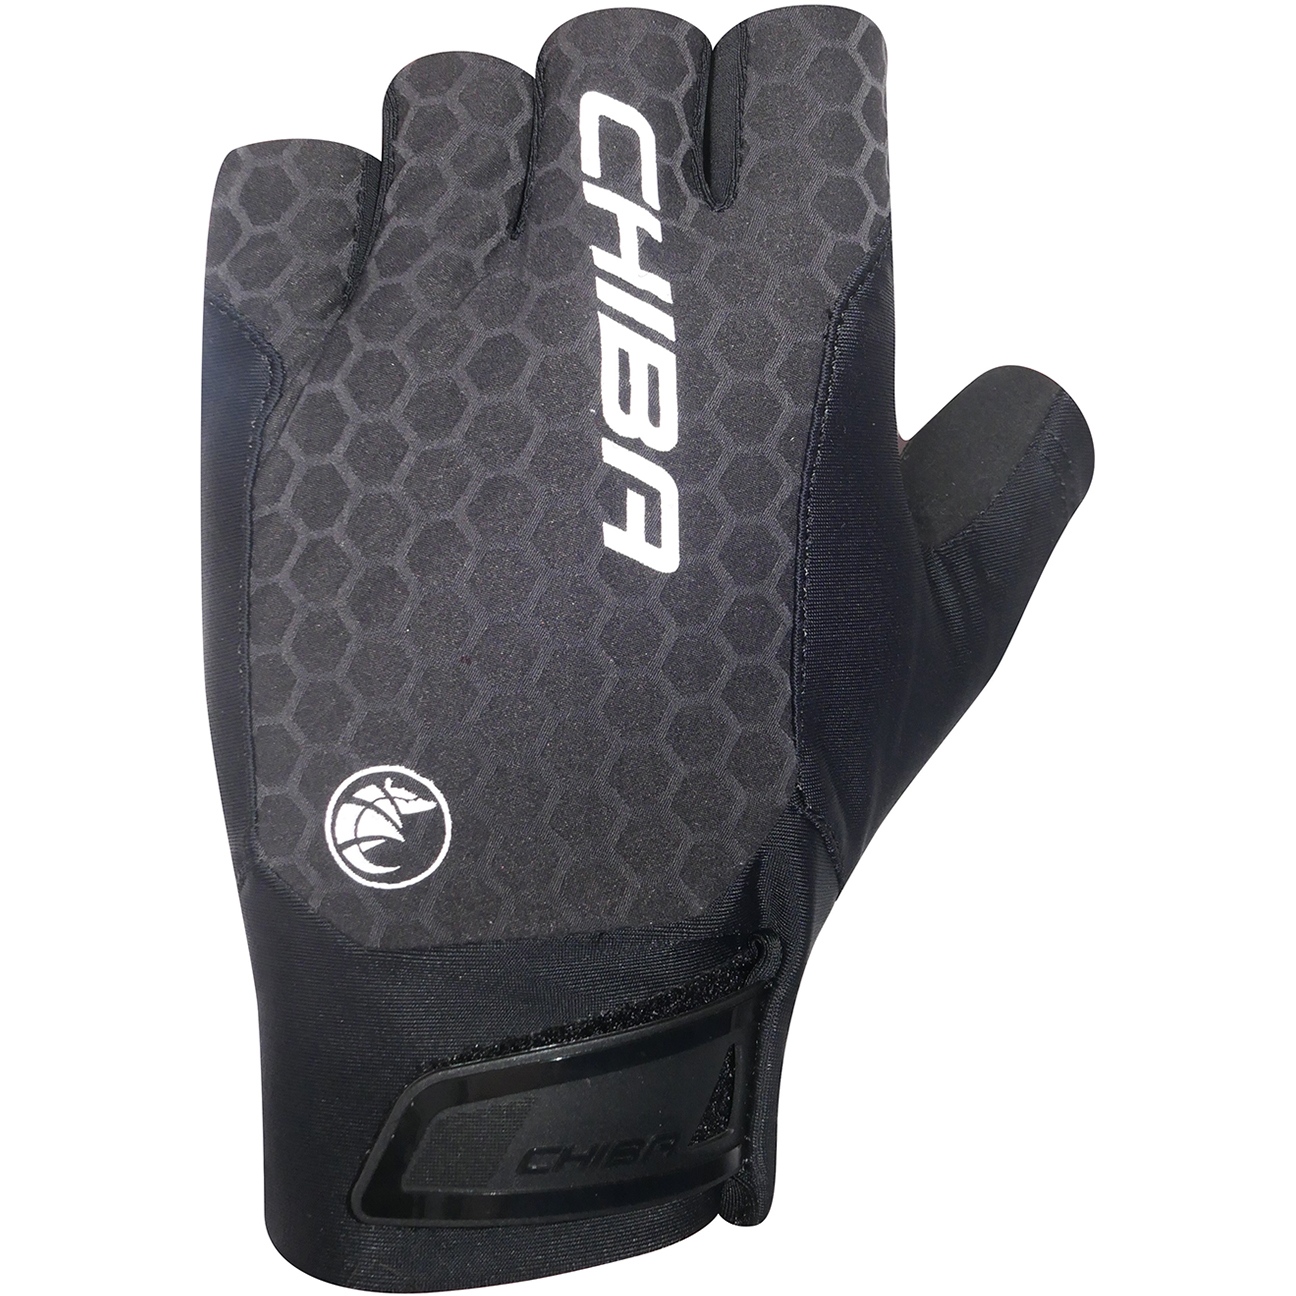 Productfoto van Chiba Pure Race II Handschoenen met Korte Vingers - zwart